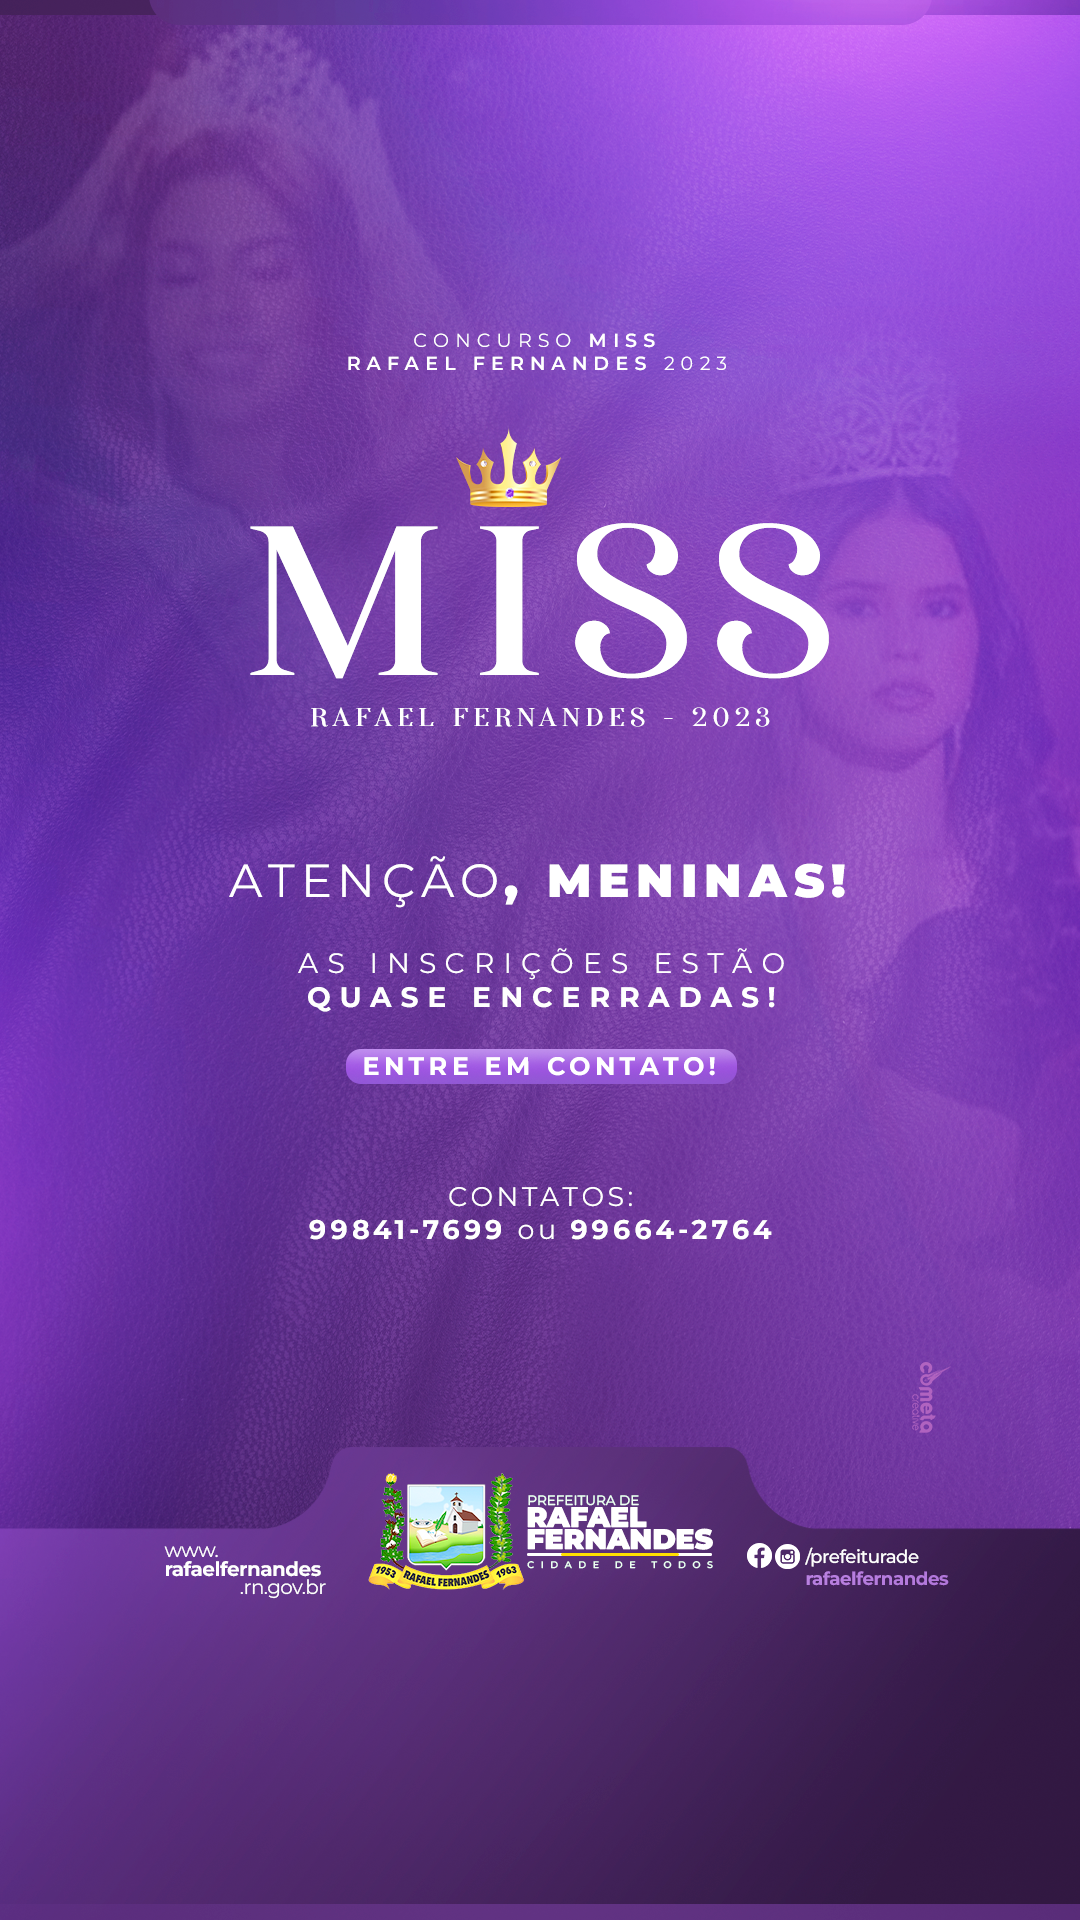 Inscrições para o concurso Miss Rafael Fernandes 2023, estão quase encerradas!